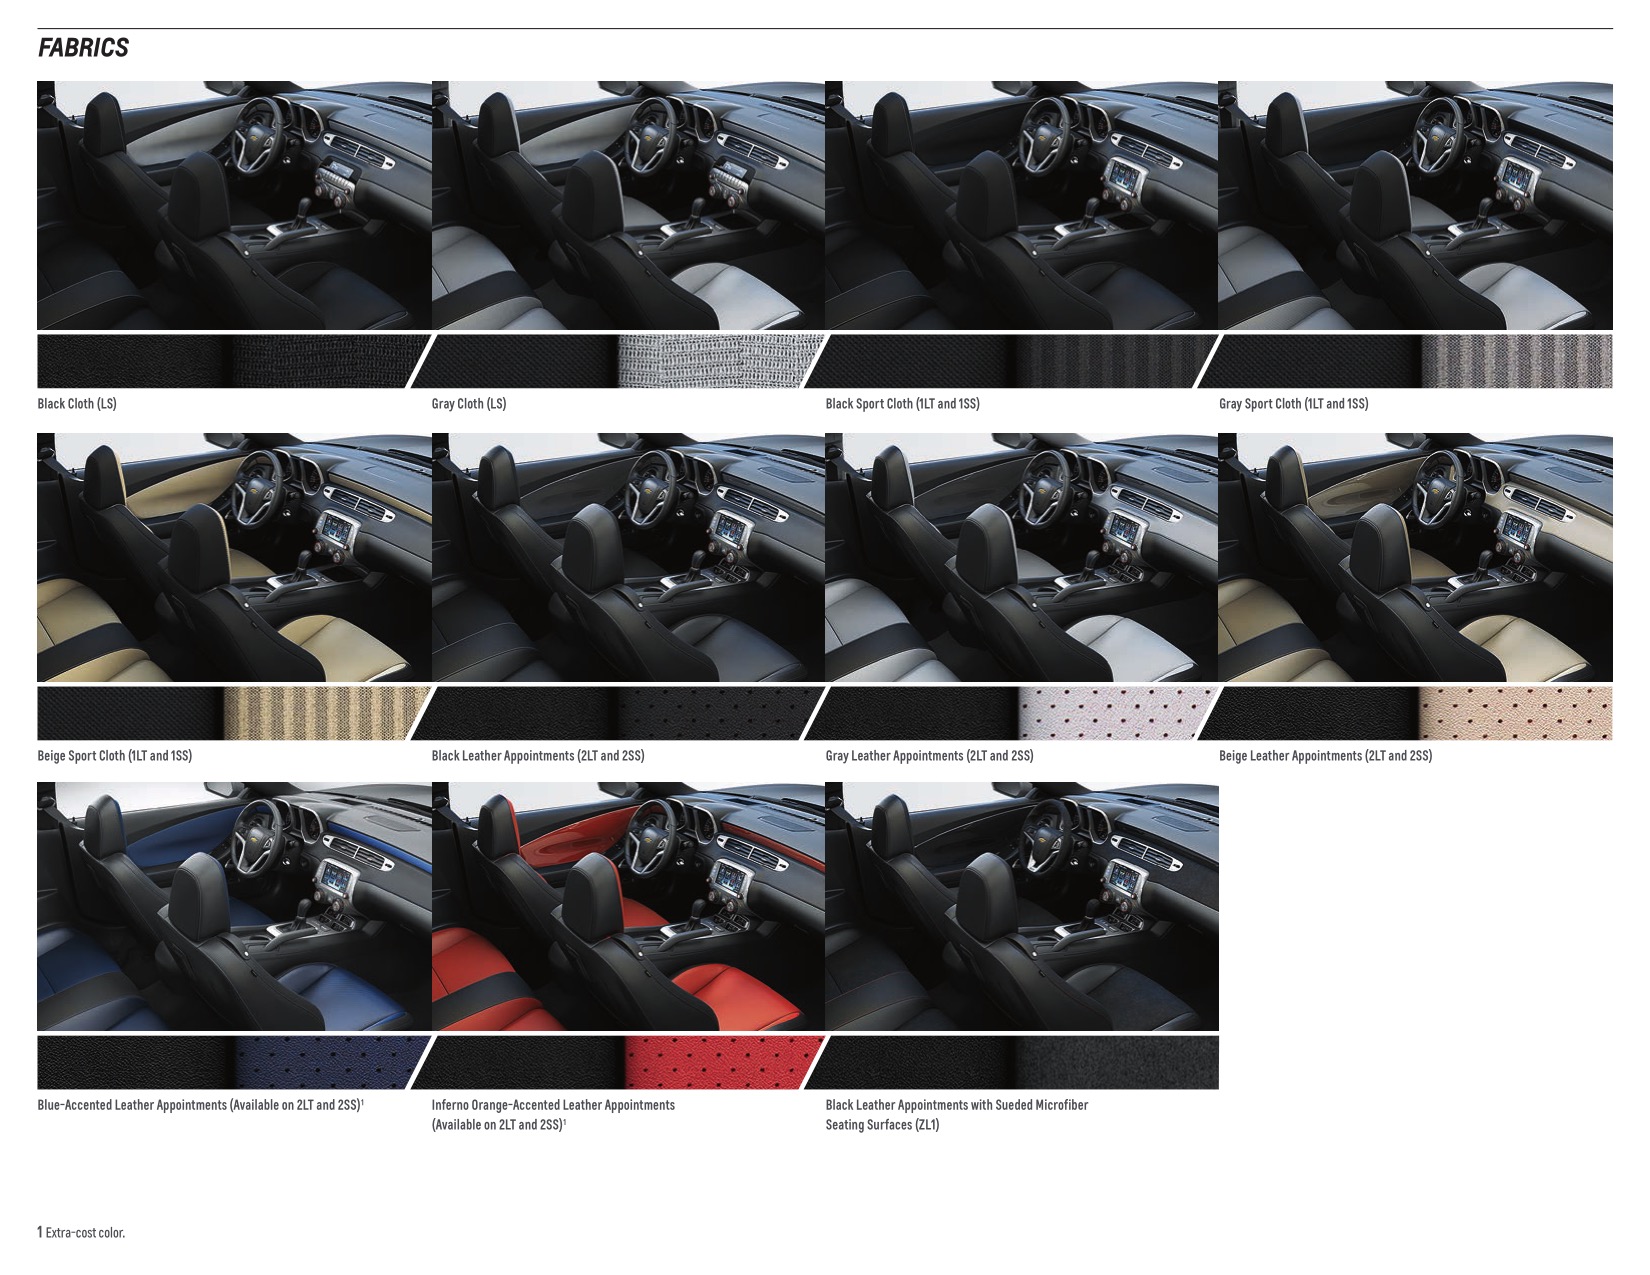 2014 Chev Camaro Brochure Page 19